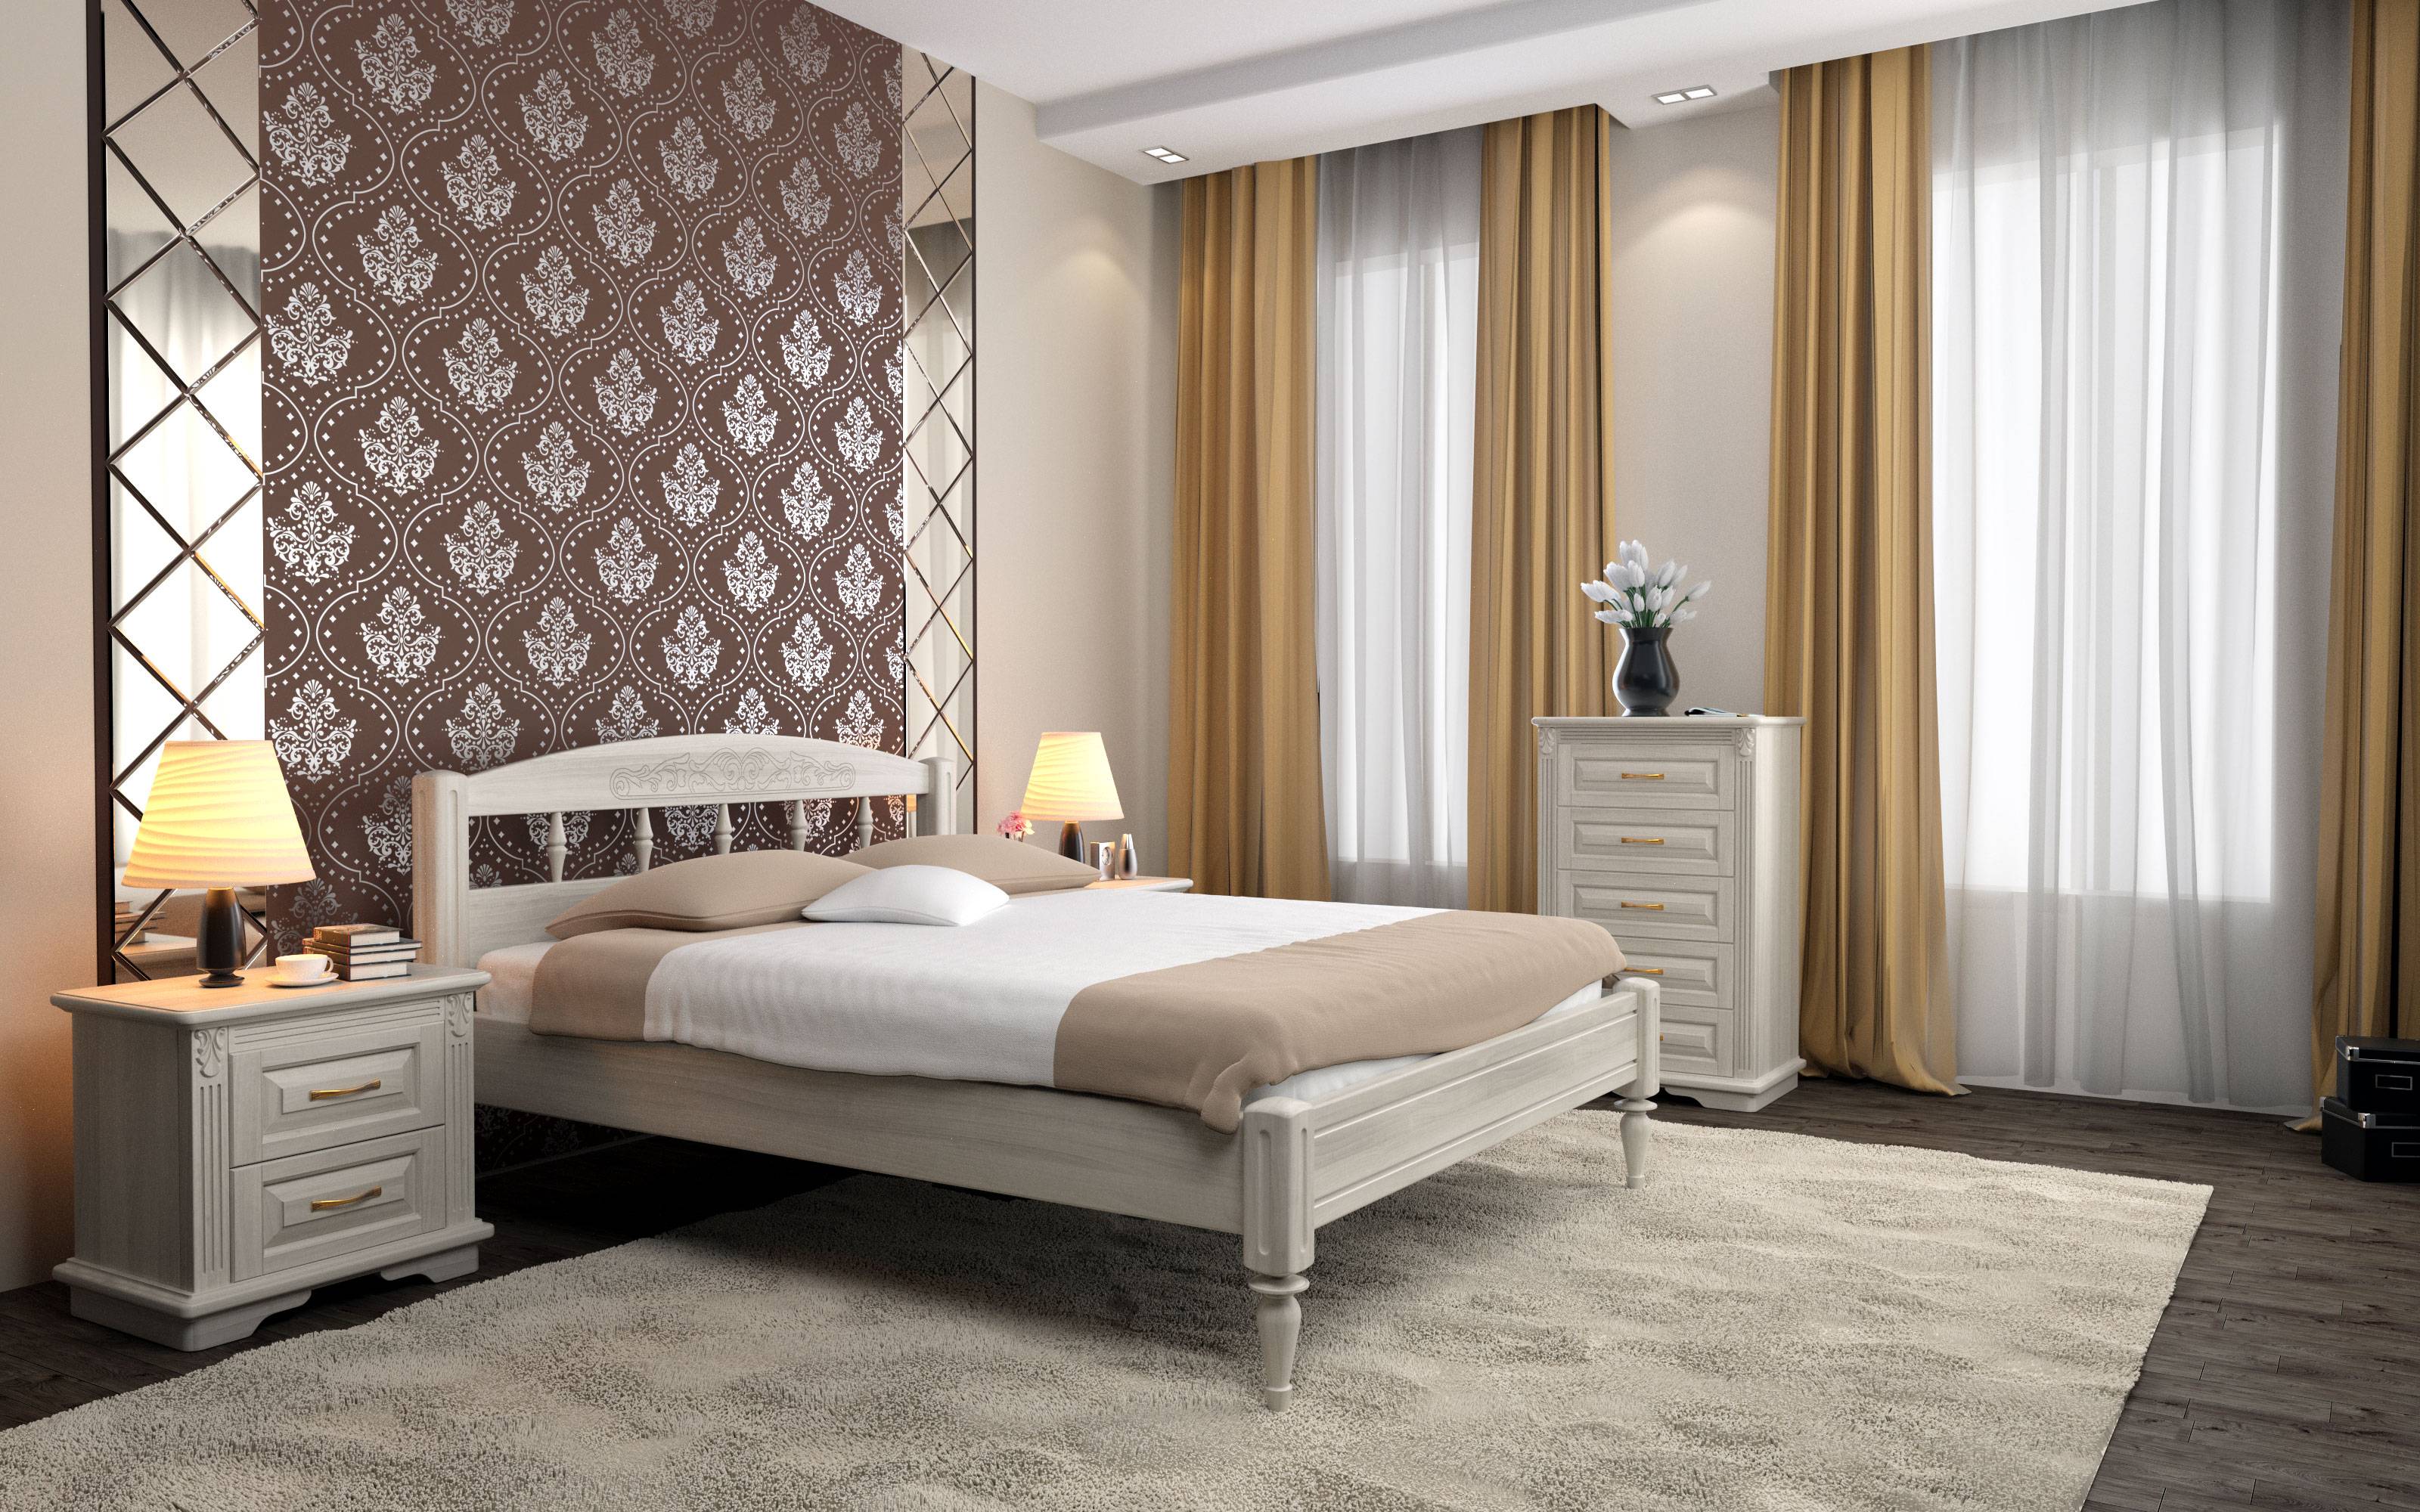 Дизайн обоев для спальни (150 фото) - реальные примеры сочетания цвета и стиля обоев